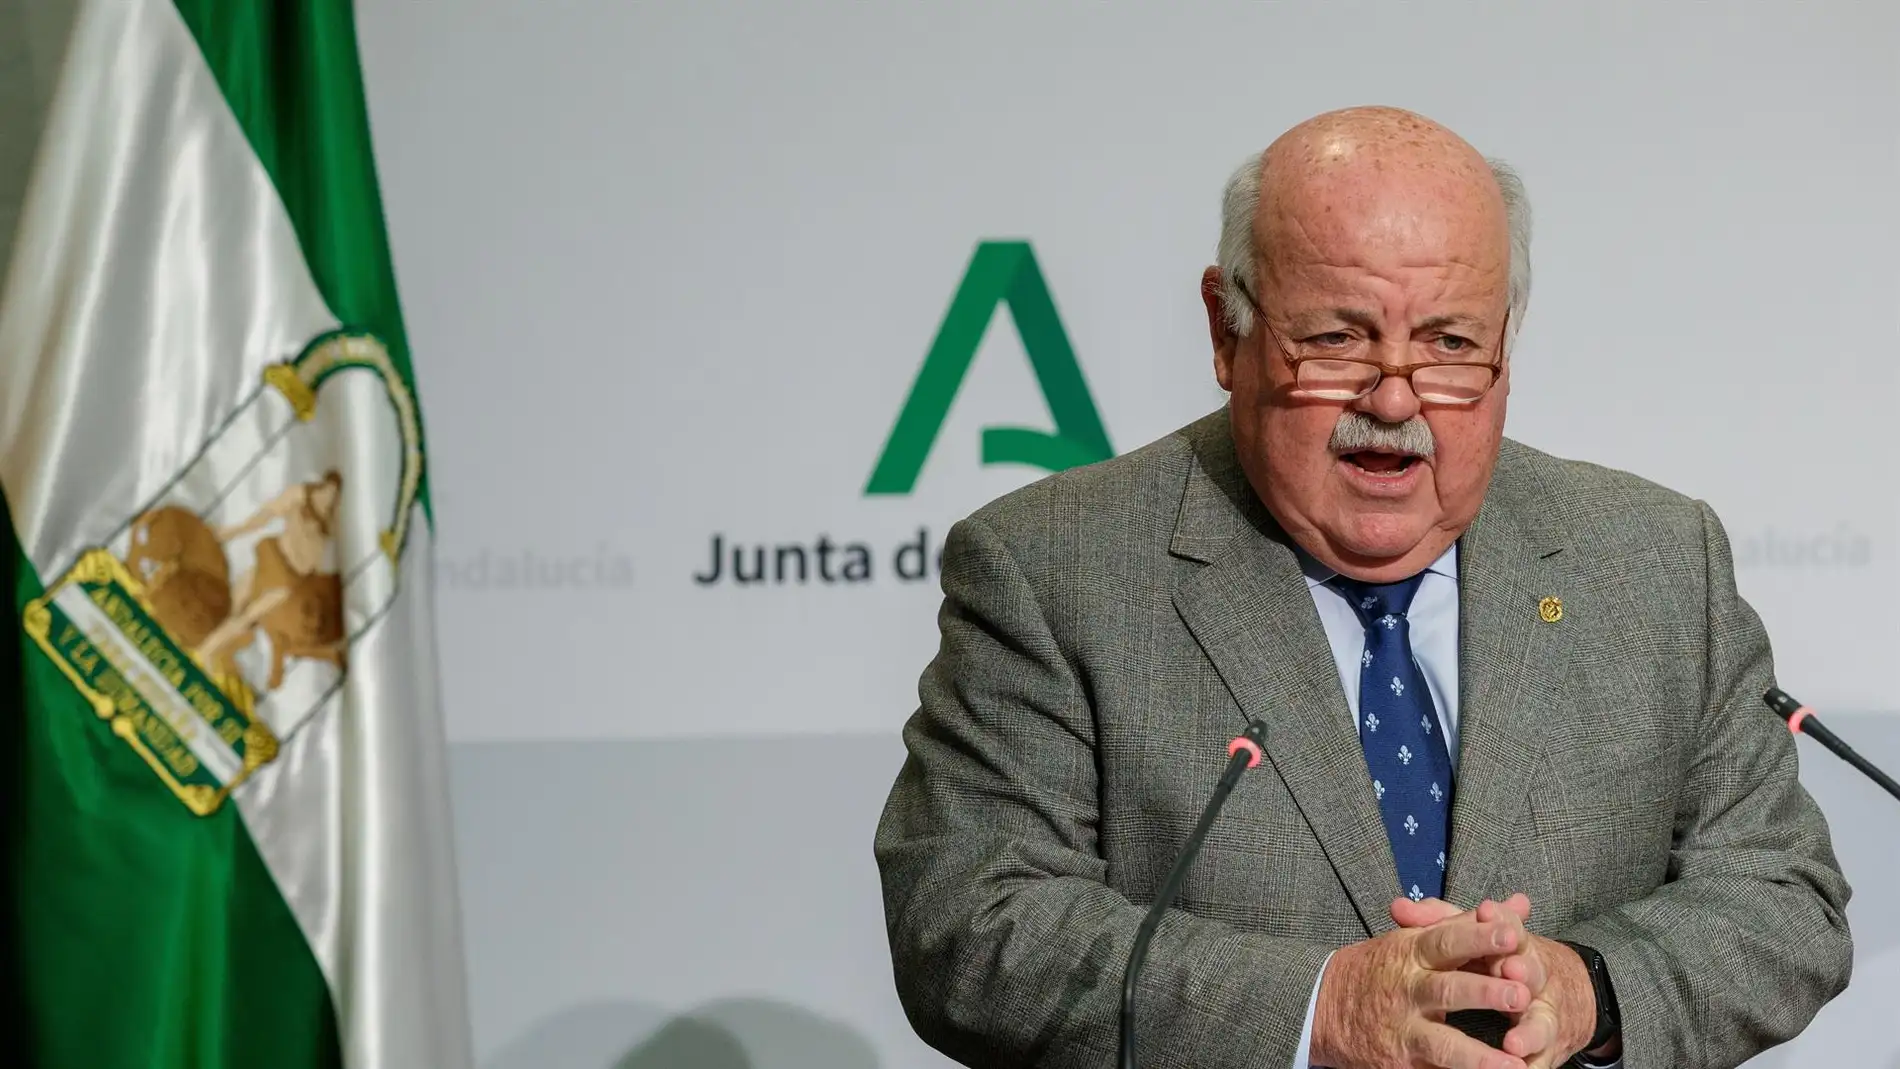 Jesús Aguirre, consejero de Sanidad de la Junta de Andalucía